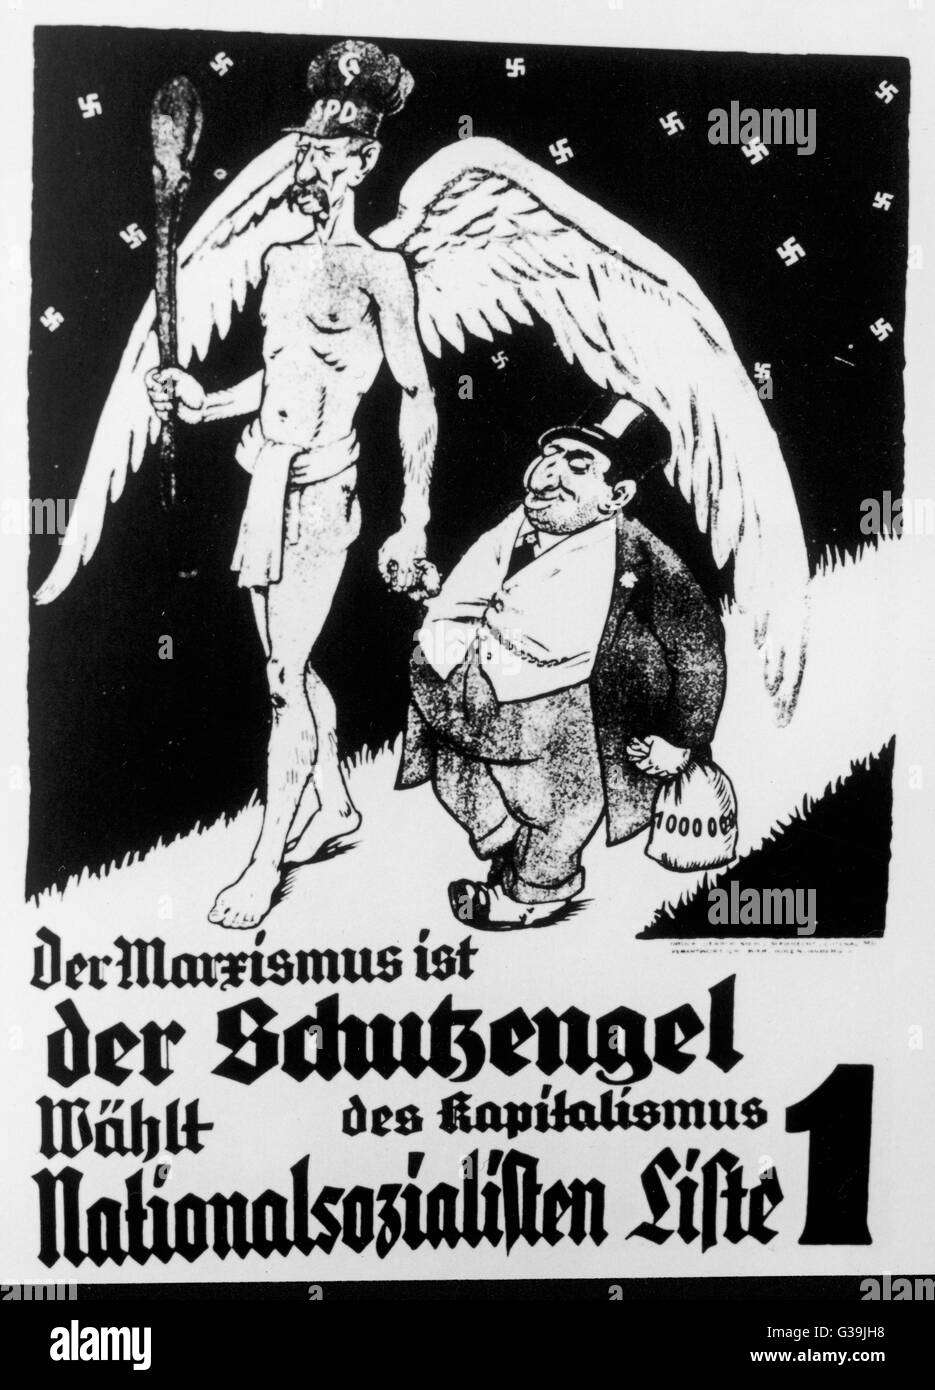 "El marxismo es el ángel protector del capitalismo" un cartel Nazi mostrando el ángel marxista caminar de la mano con un acaudalado empresario judío. Fecha: 1933 Foto de stock